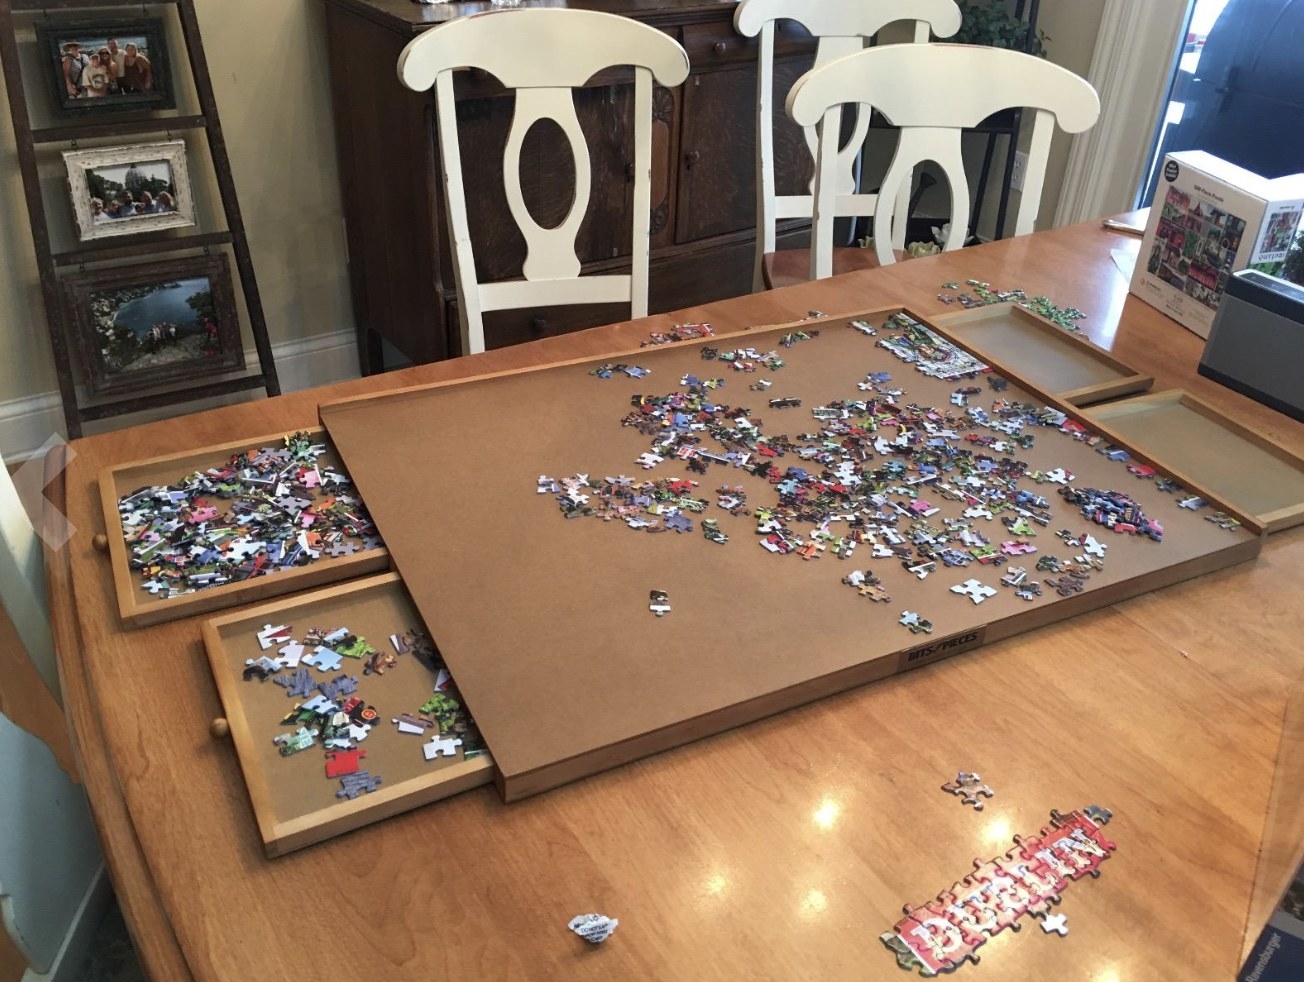 The puzzle board